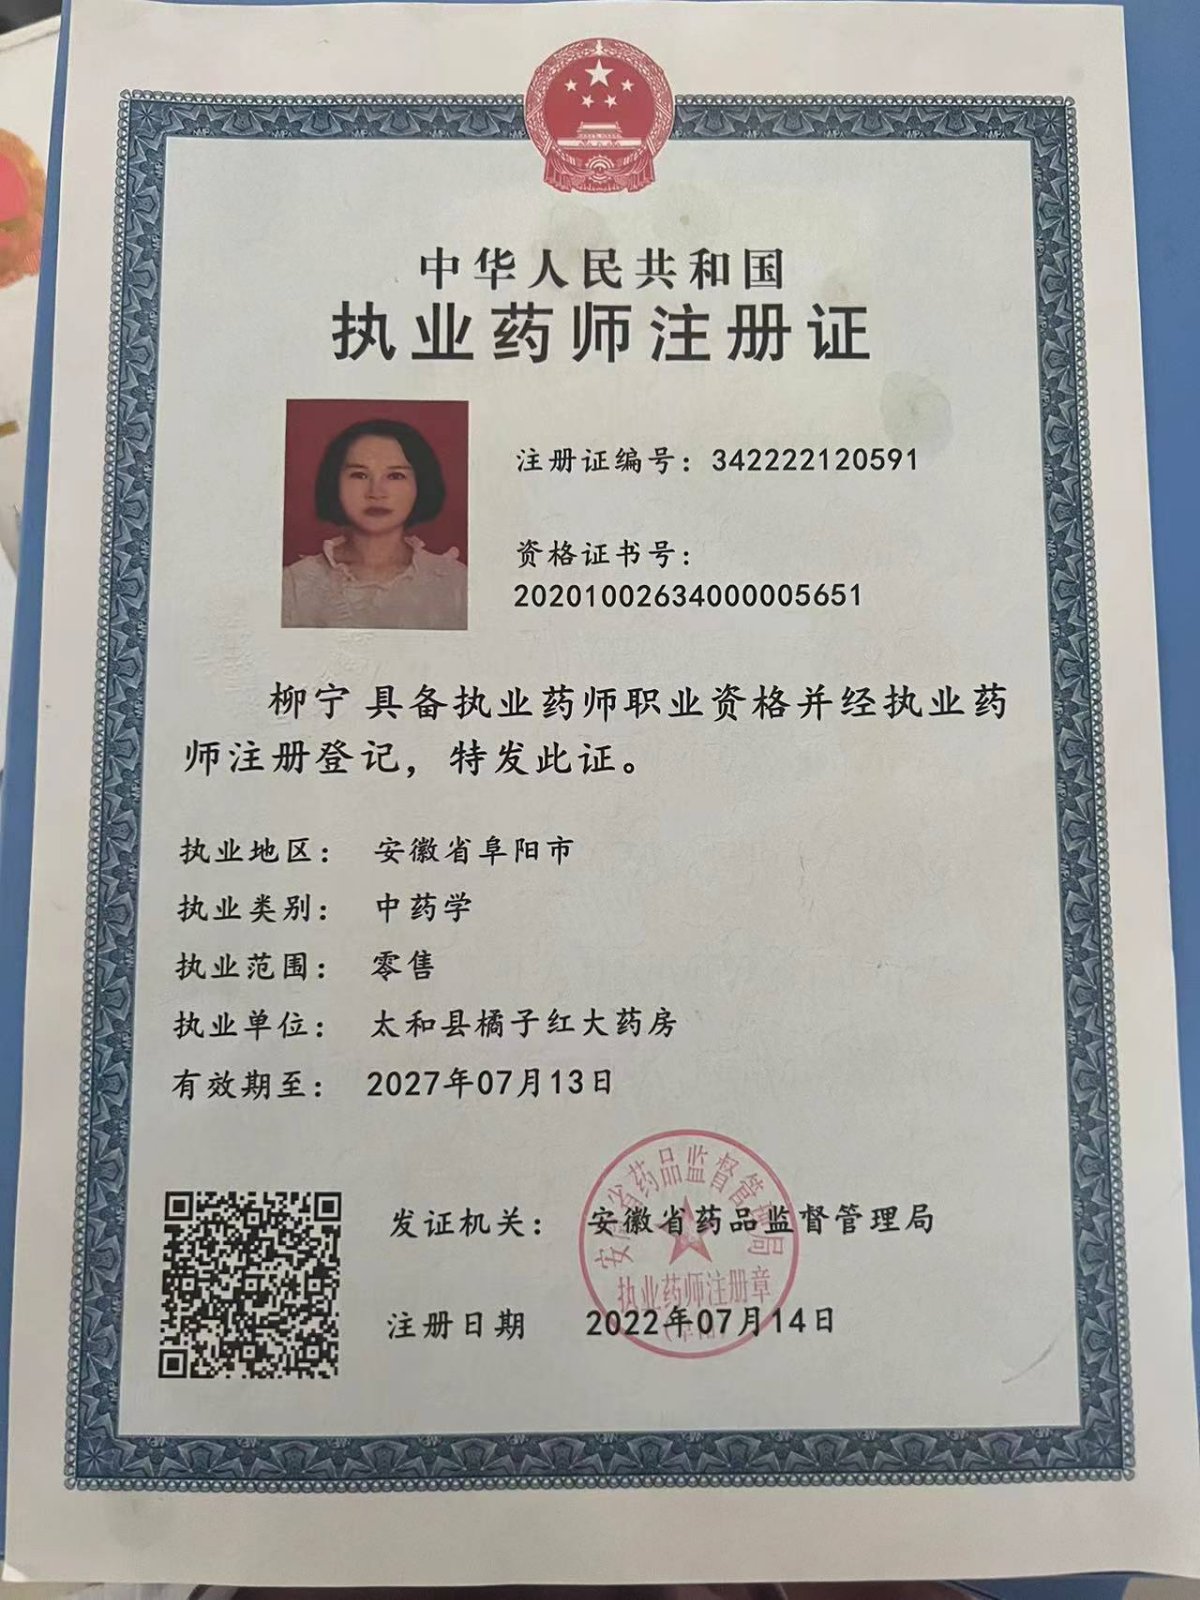 太和县橘子红大药房药师资质(2)证书:342222120591